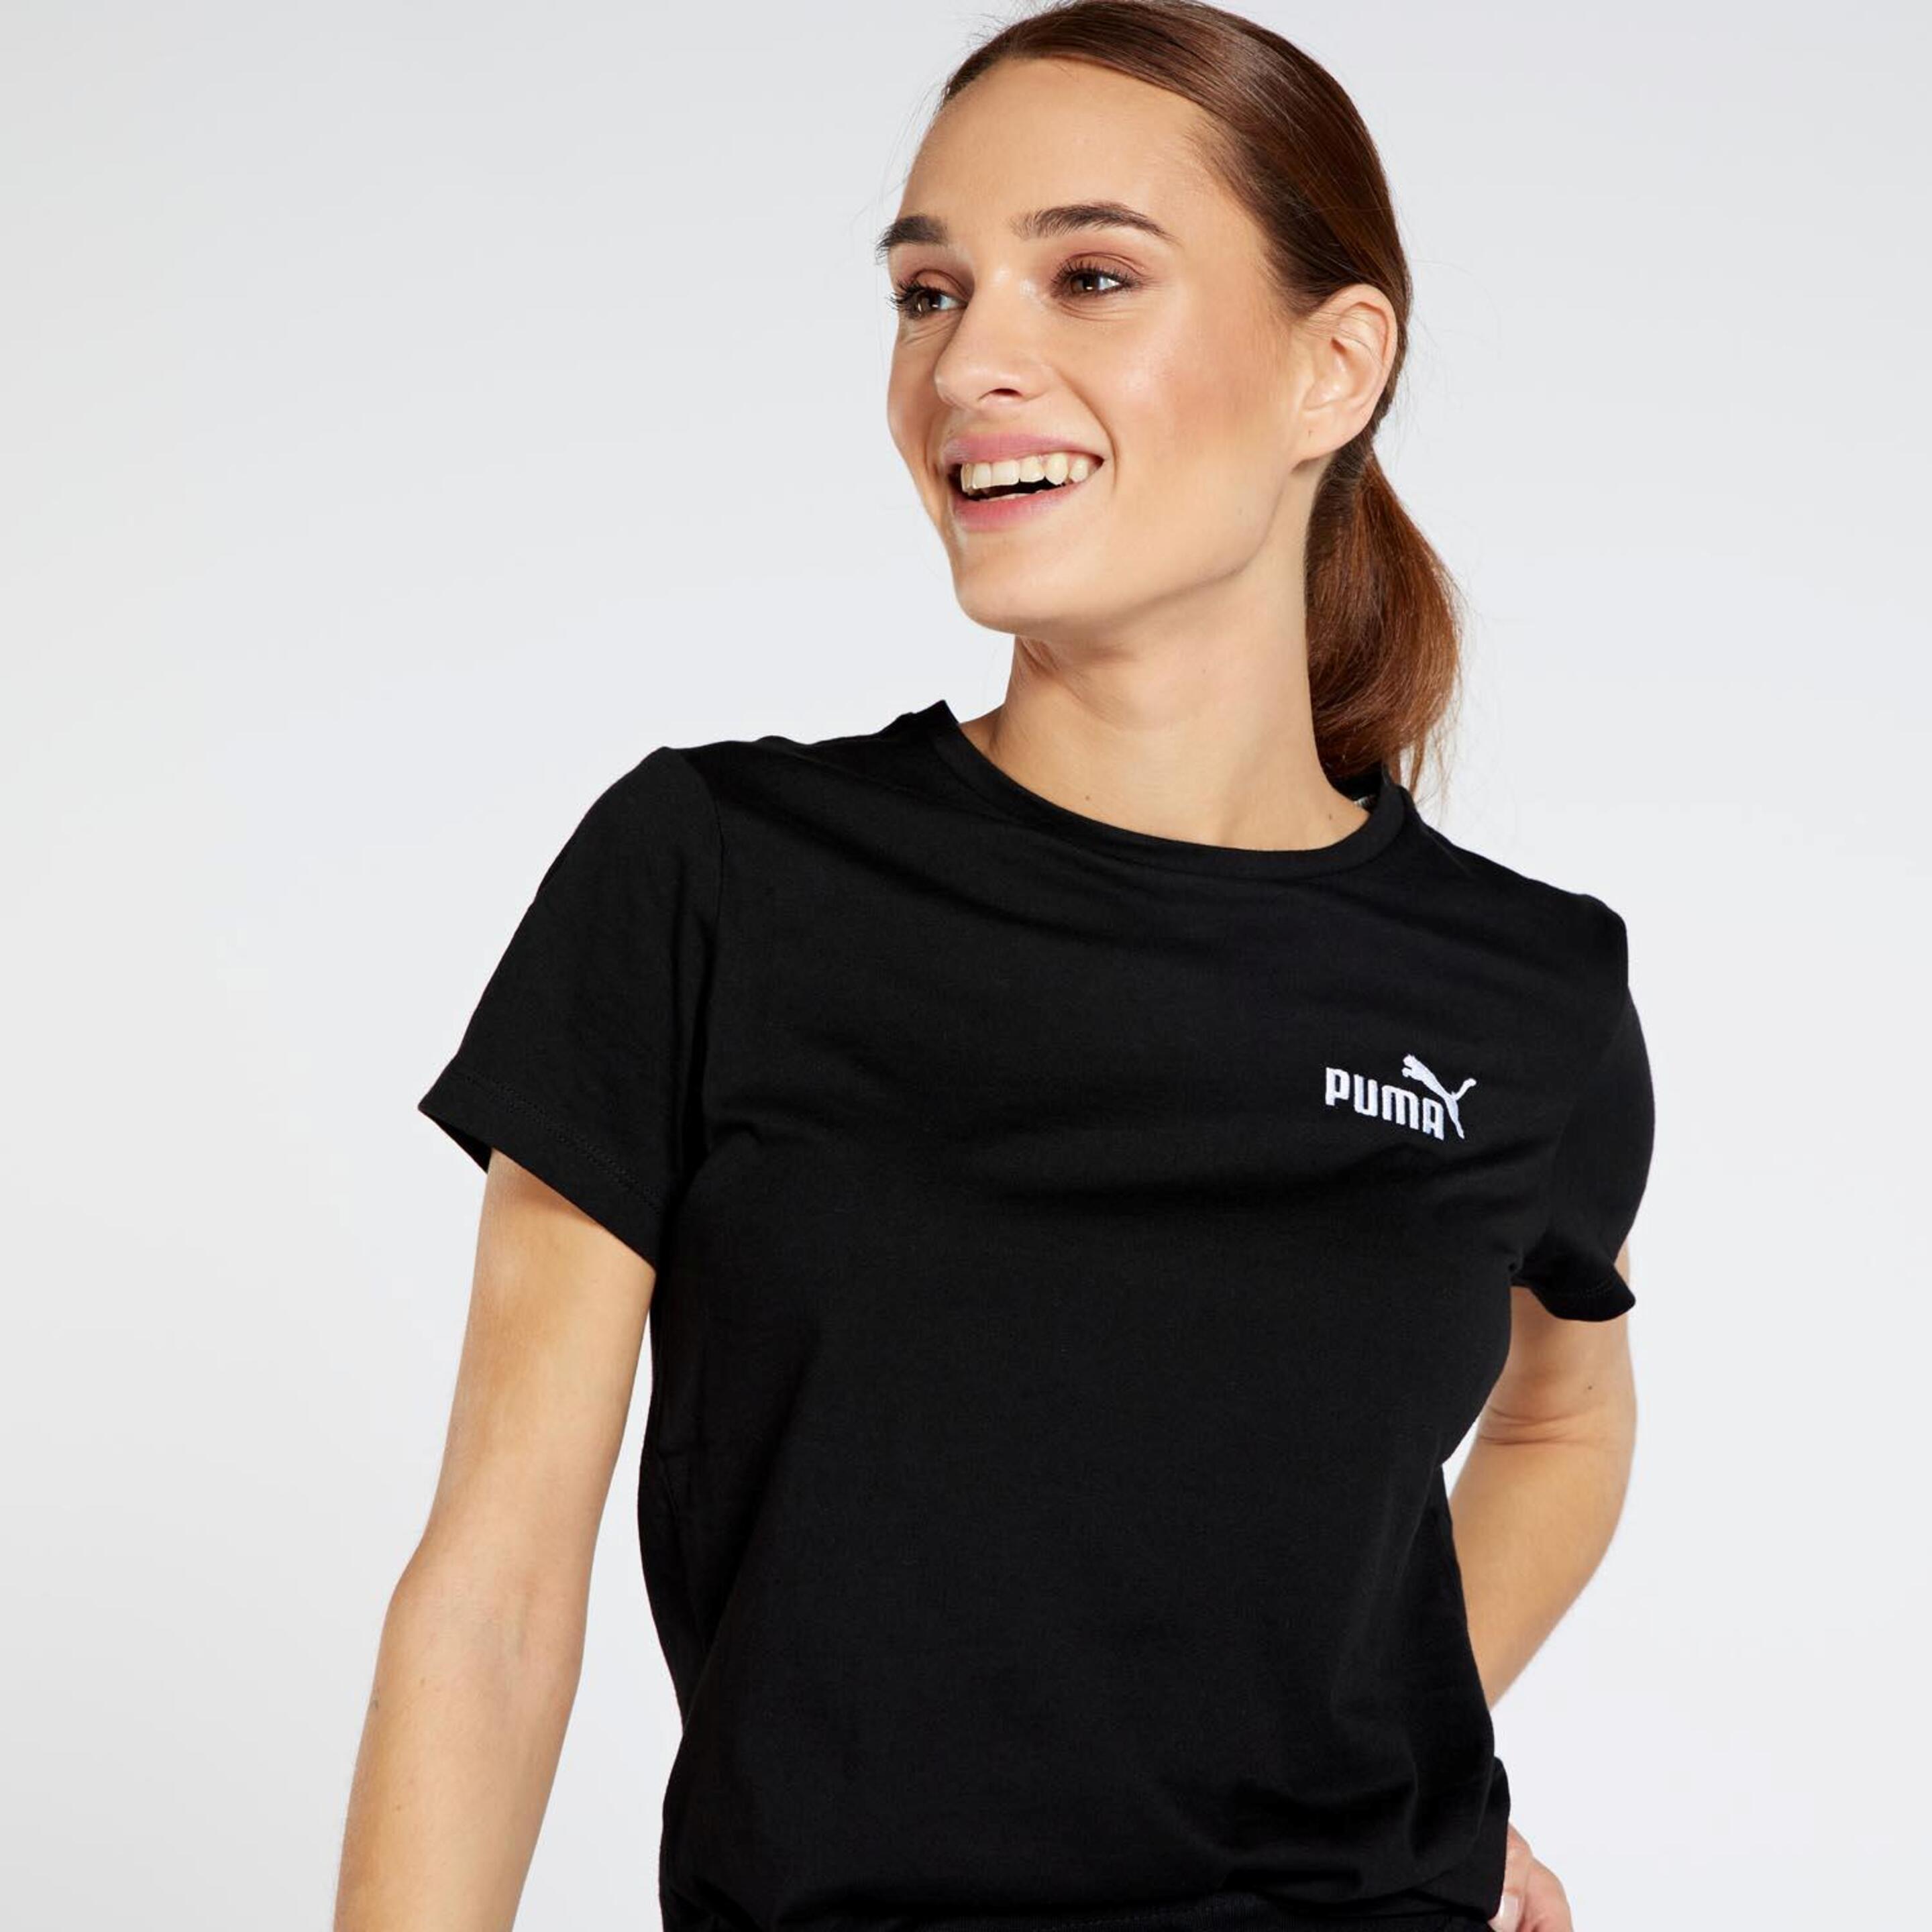 Puma Graphic - Negra - Camiseta Mujer